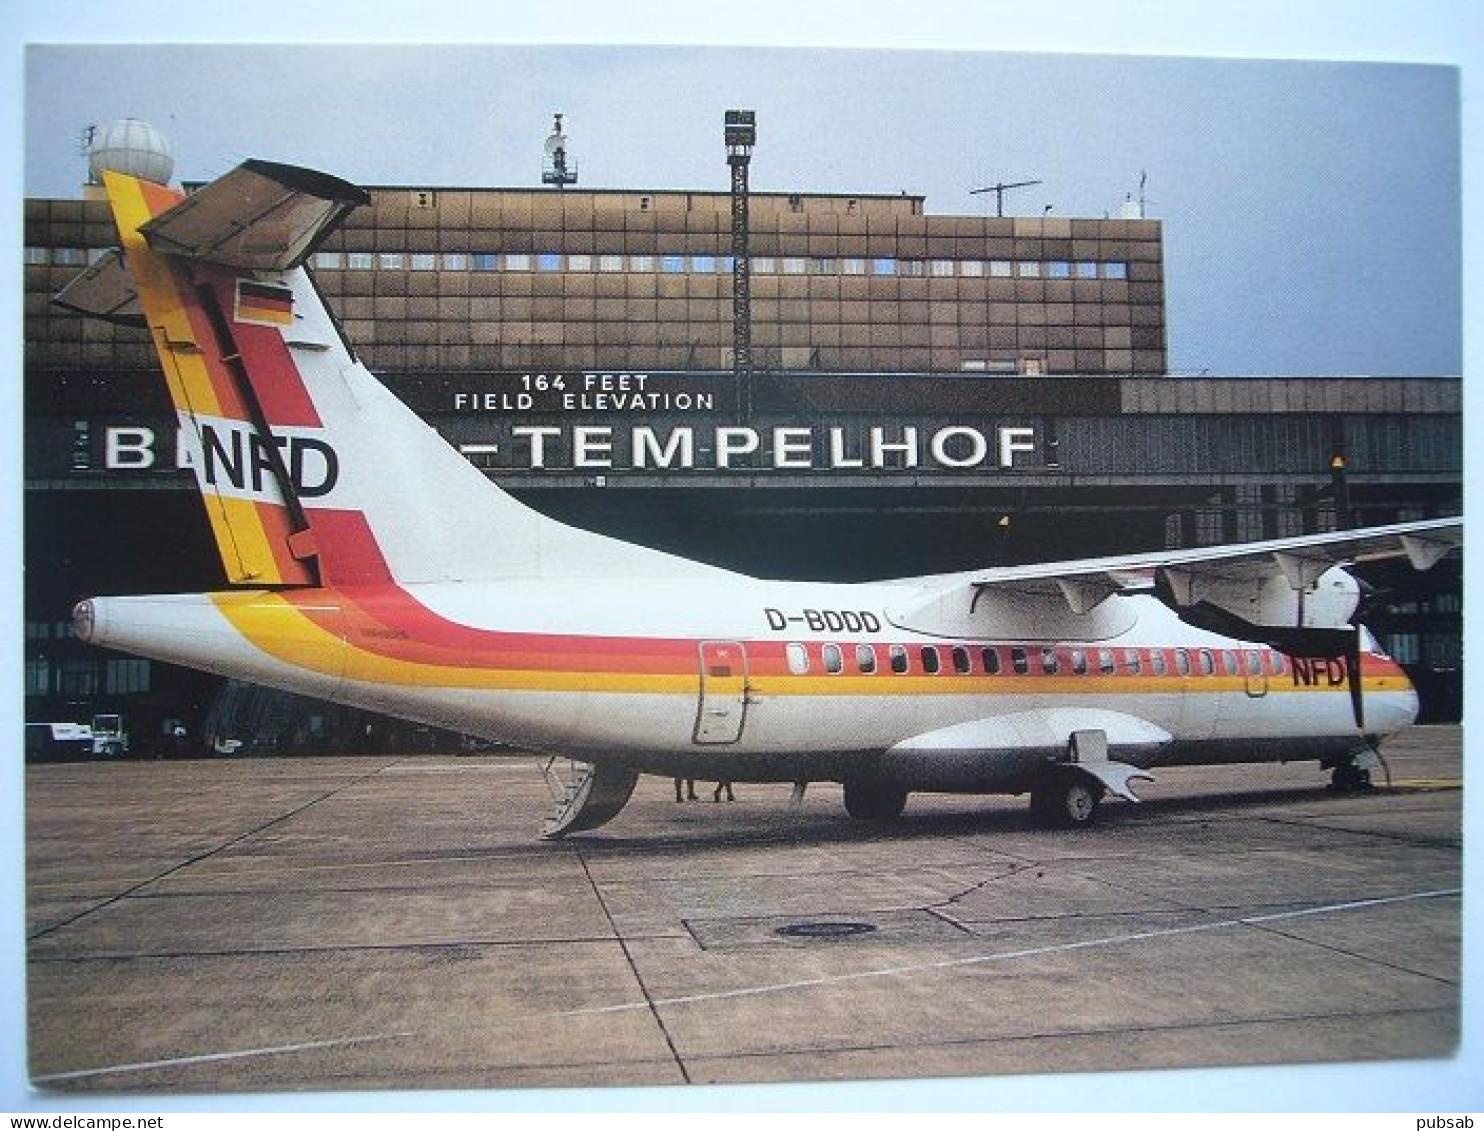 Avion / Airplane / NFD - LUFTVERKEHS AG / ATR 72 / Airline Issue / Seen At Berlin Tempelhof Airport - 1946-....: Modern Era